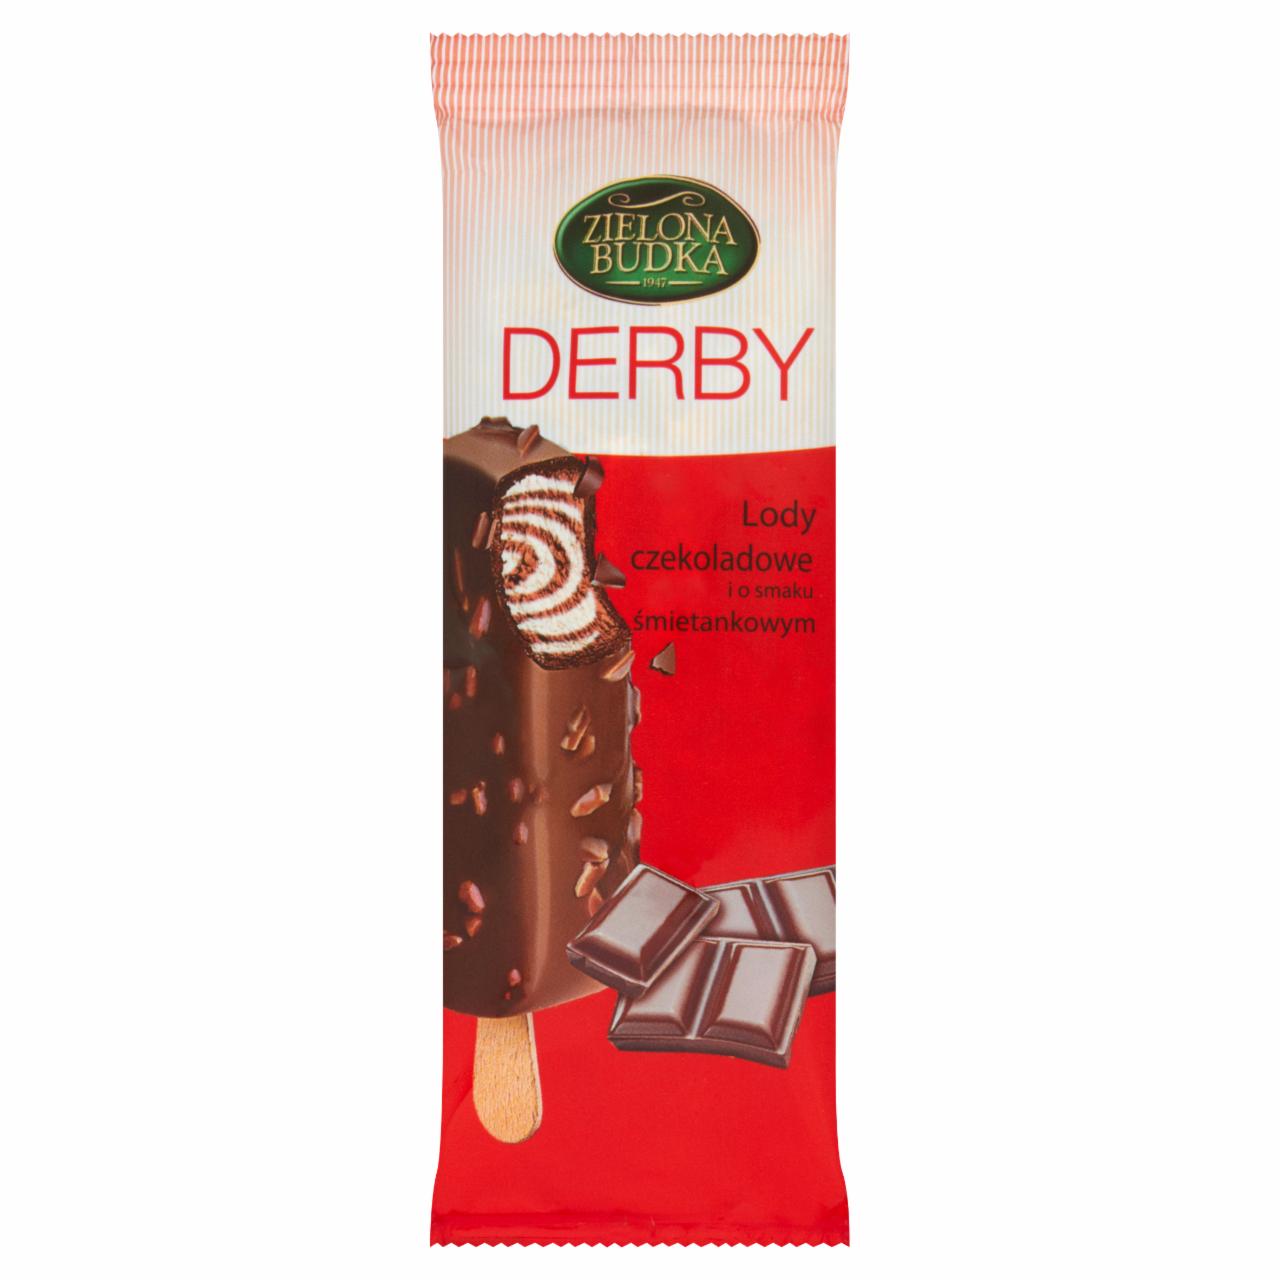 Zdjęcia - Zielona Budka Derby Lody czekoladowe i o smaku śmietankowym 110 ml